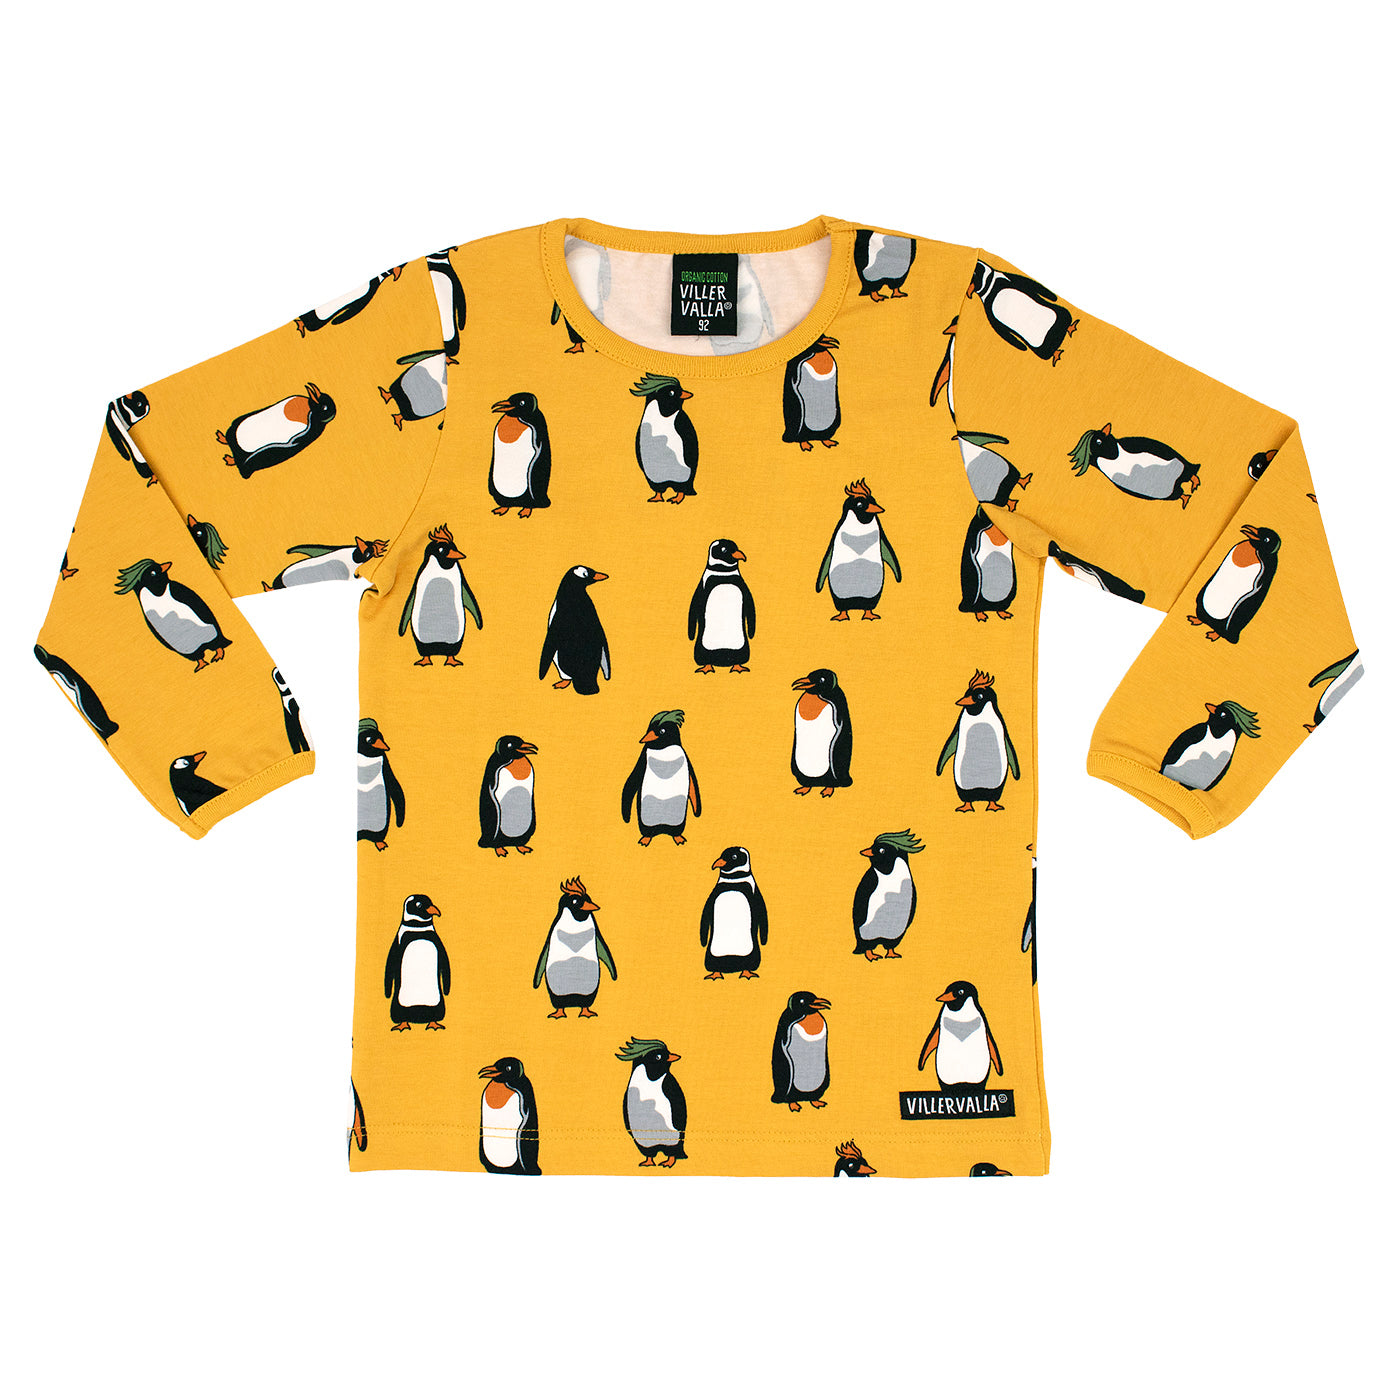 Penguin Long Sleeve Shirt in Saffron-Villervalla-Modern Rascals